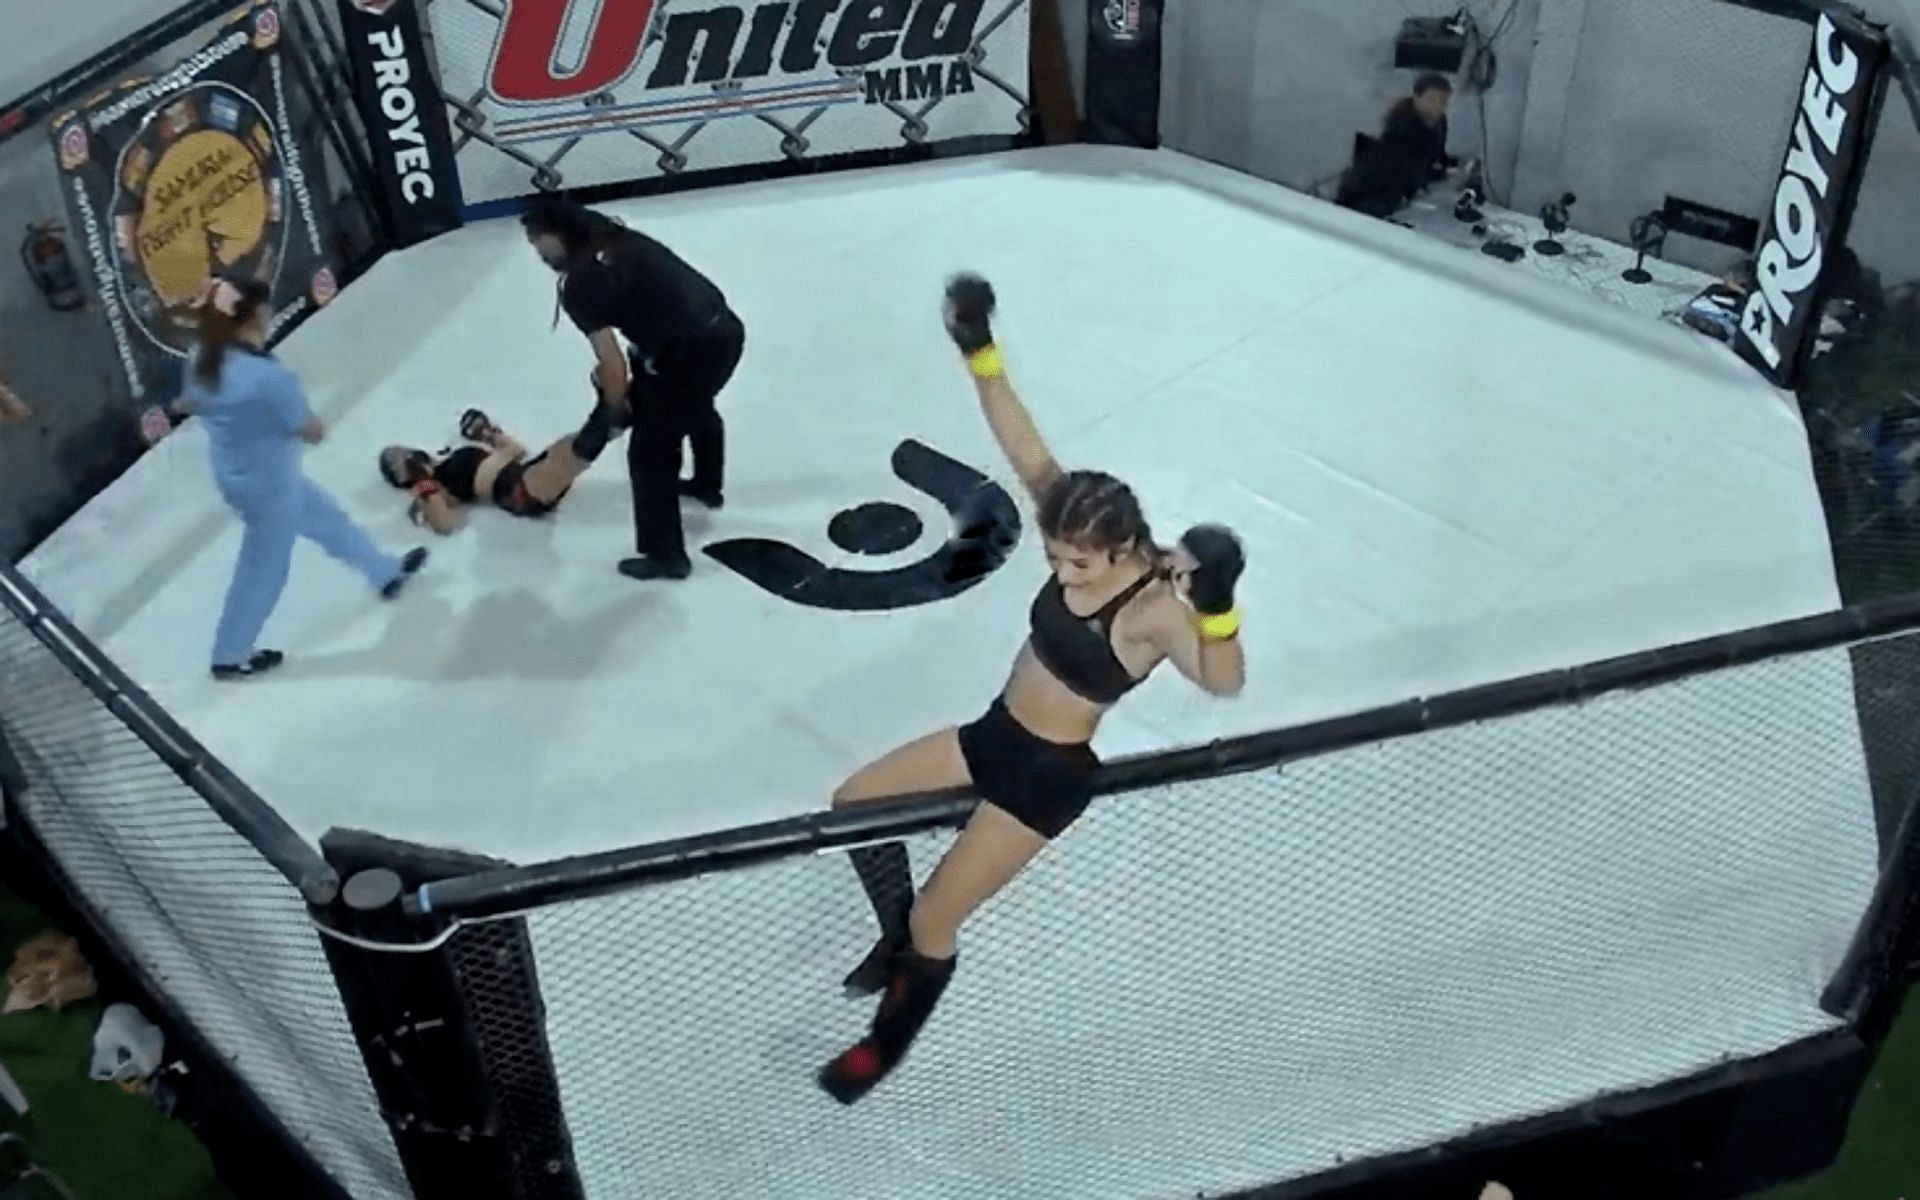 Julieta Martinez celebrates knocking out Brenda Oliva